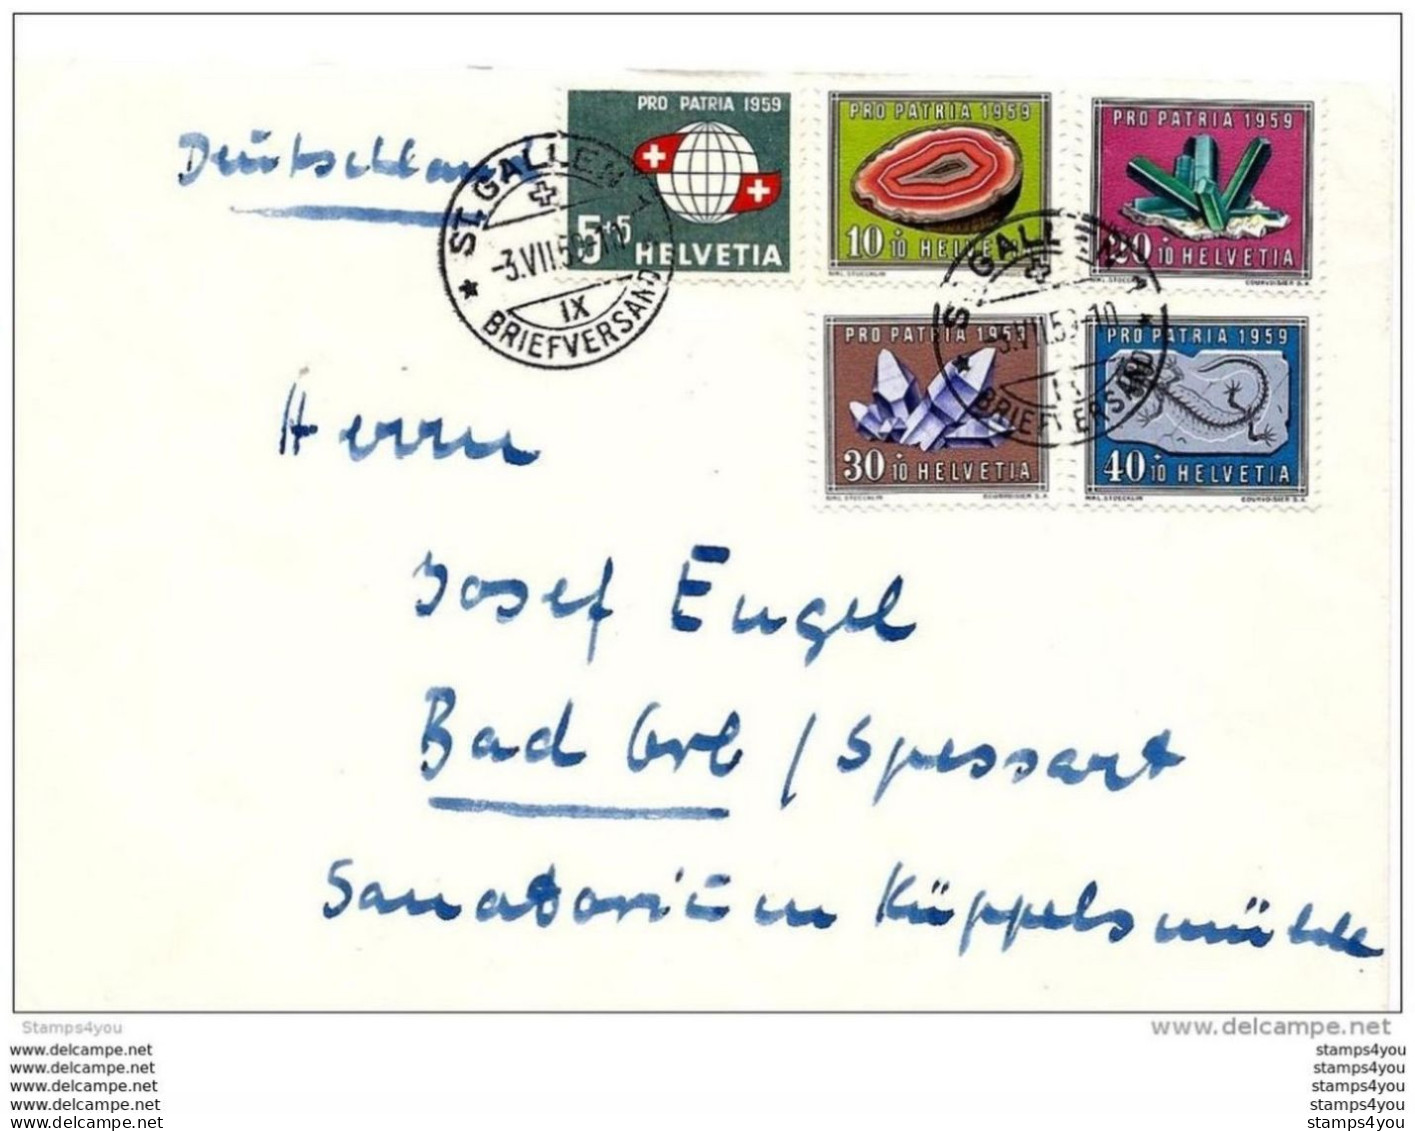 100 - 71 - Enveloppe Envoyée De St Gallern En Allemagne - 1959 Avec Série Pro Patria - Briefe U. Dokumente